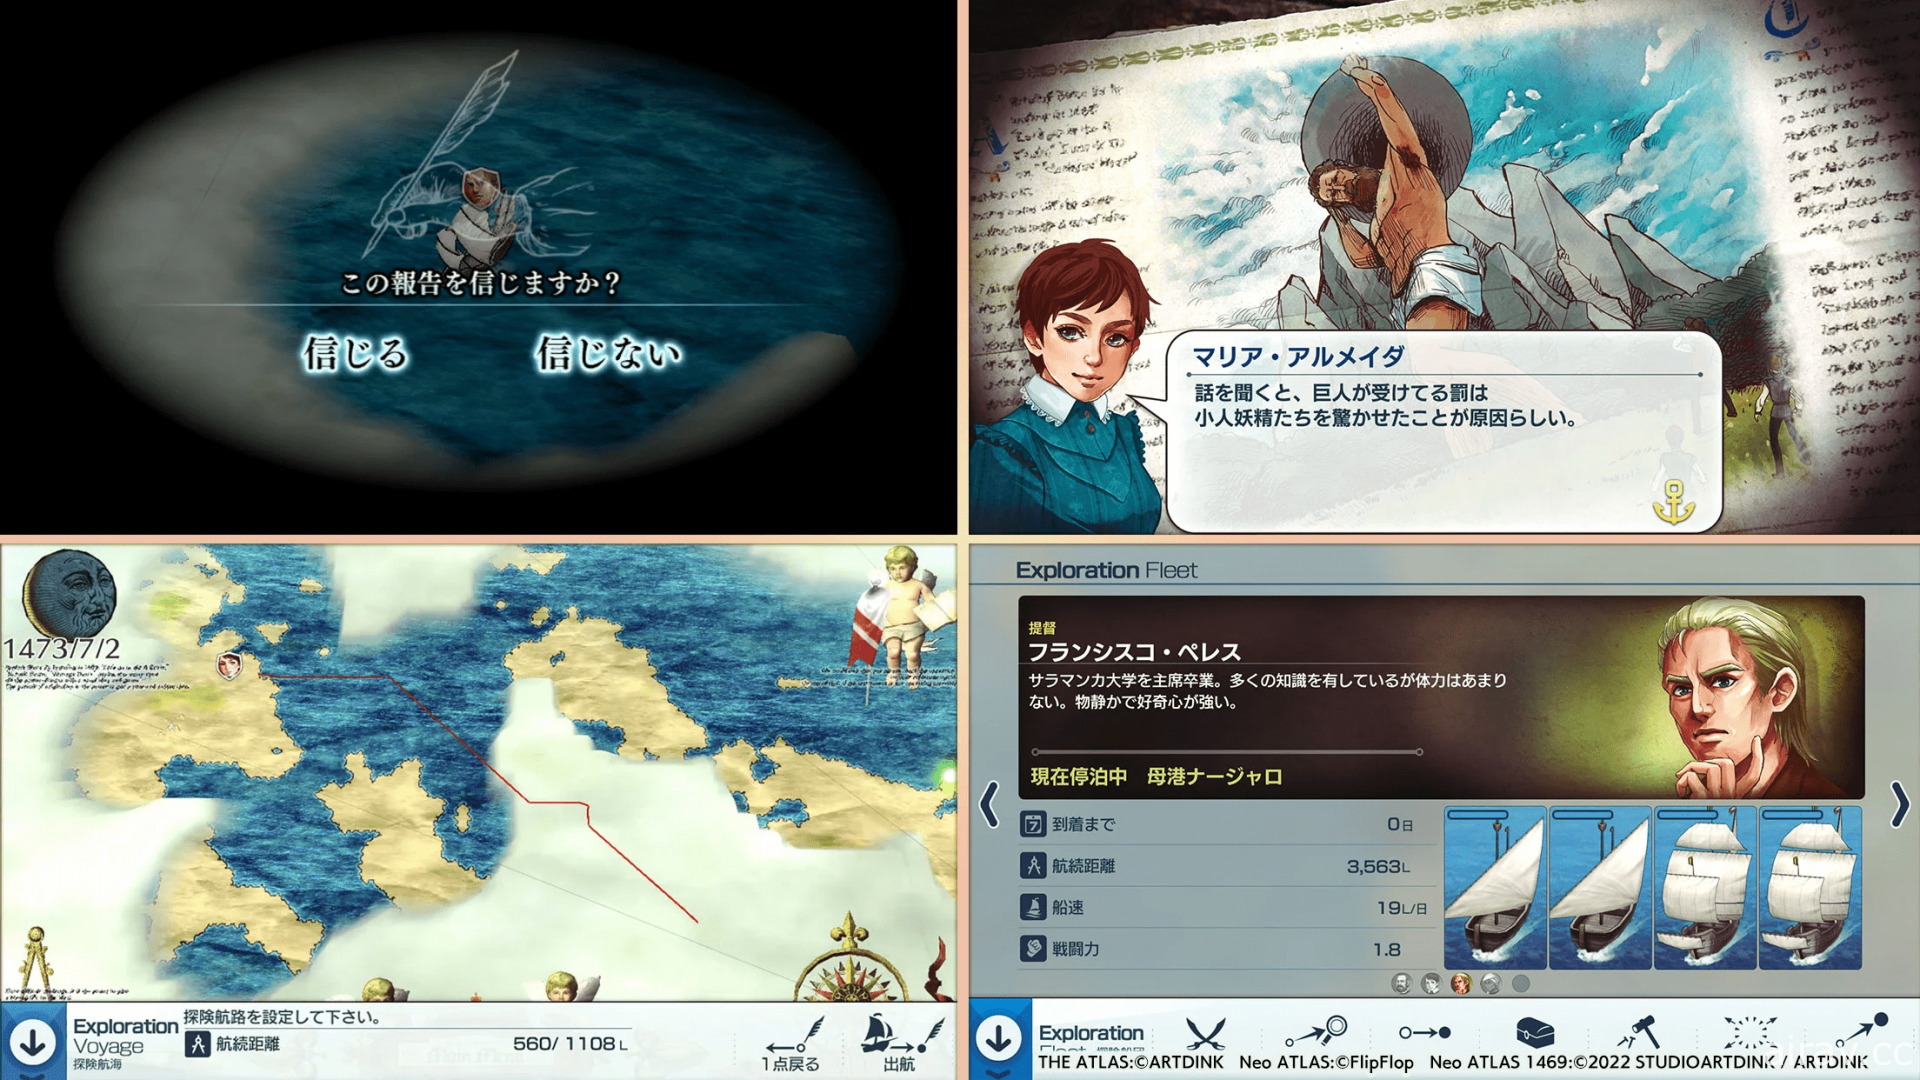 新世界發現模擬遊戲《新世界地圖 1469 MOBILE》於日本推出 挑戰親自製作世界地圖